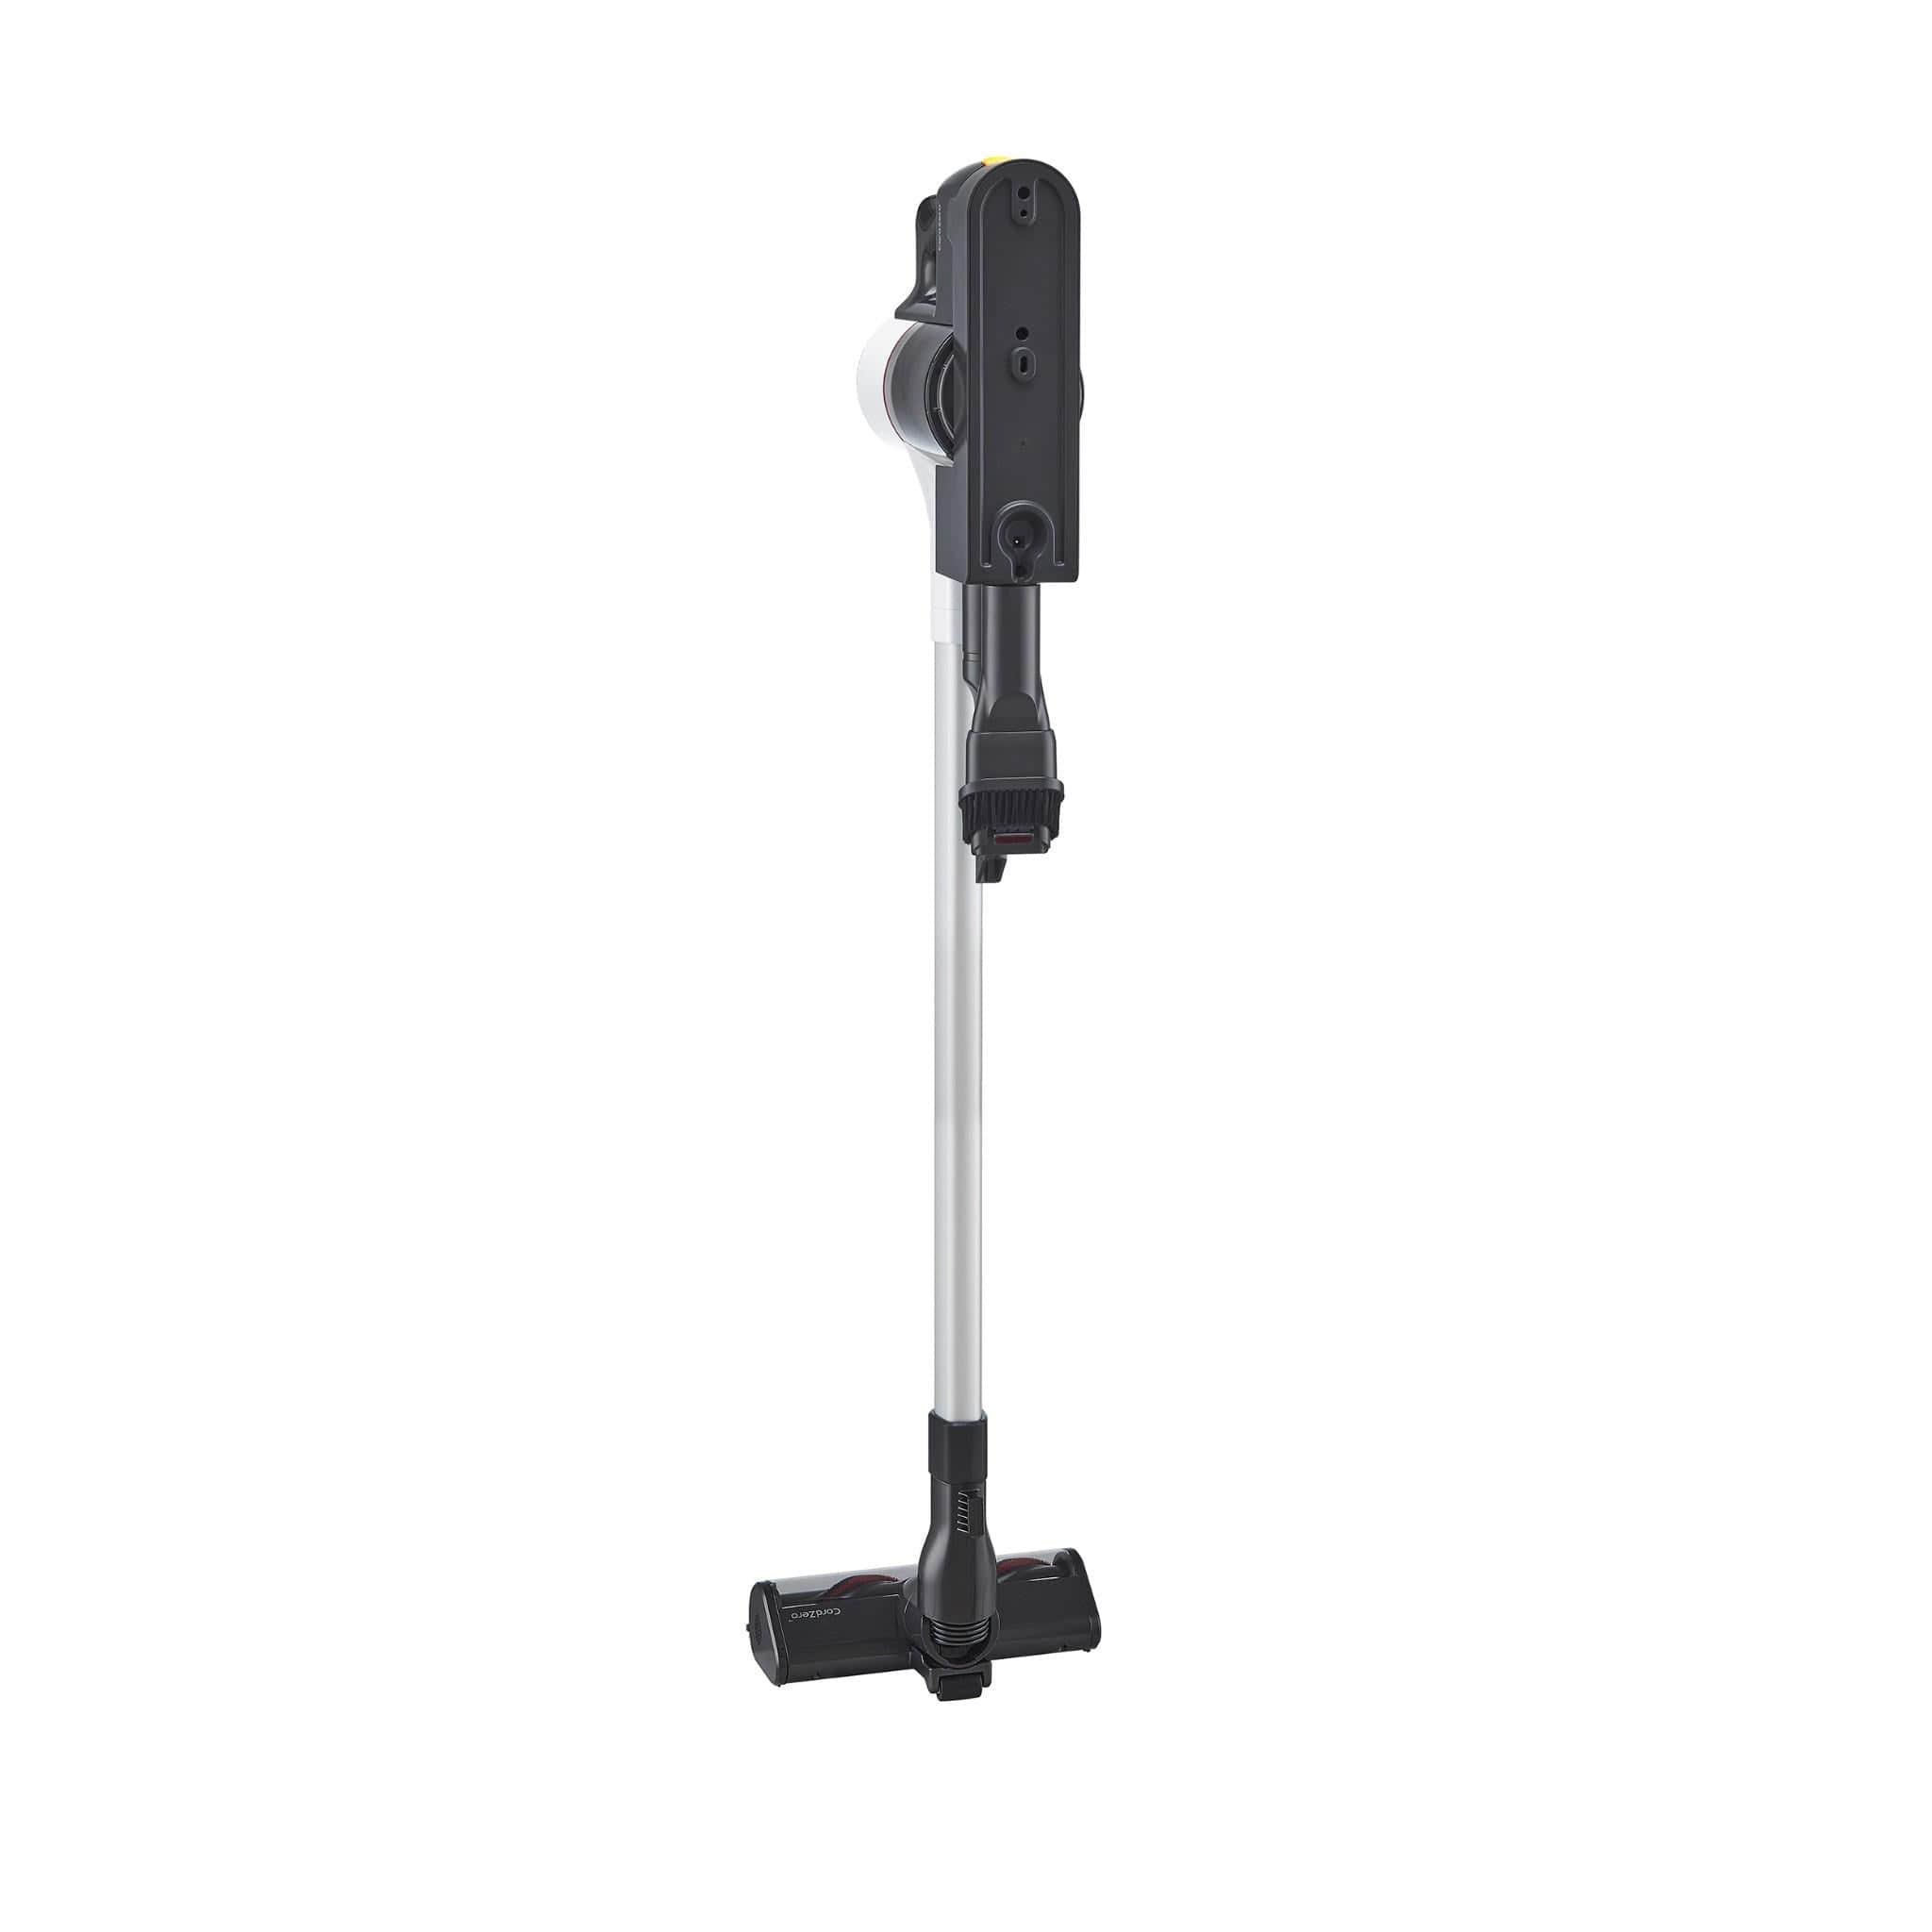 LG Handstick Vacuum